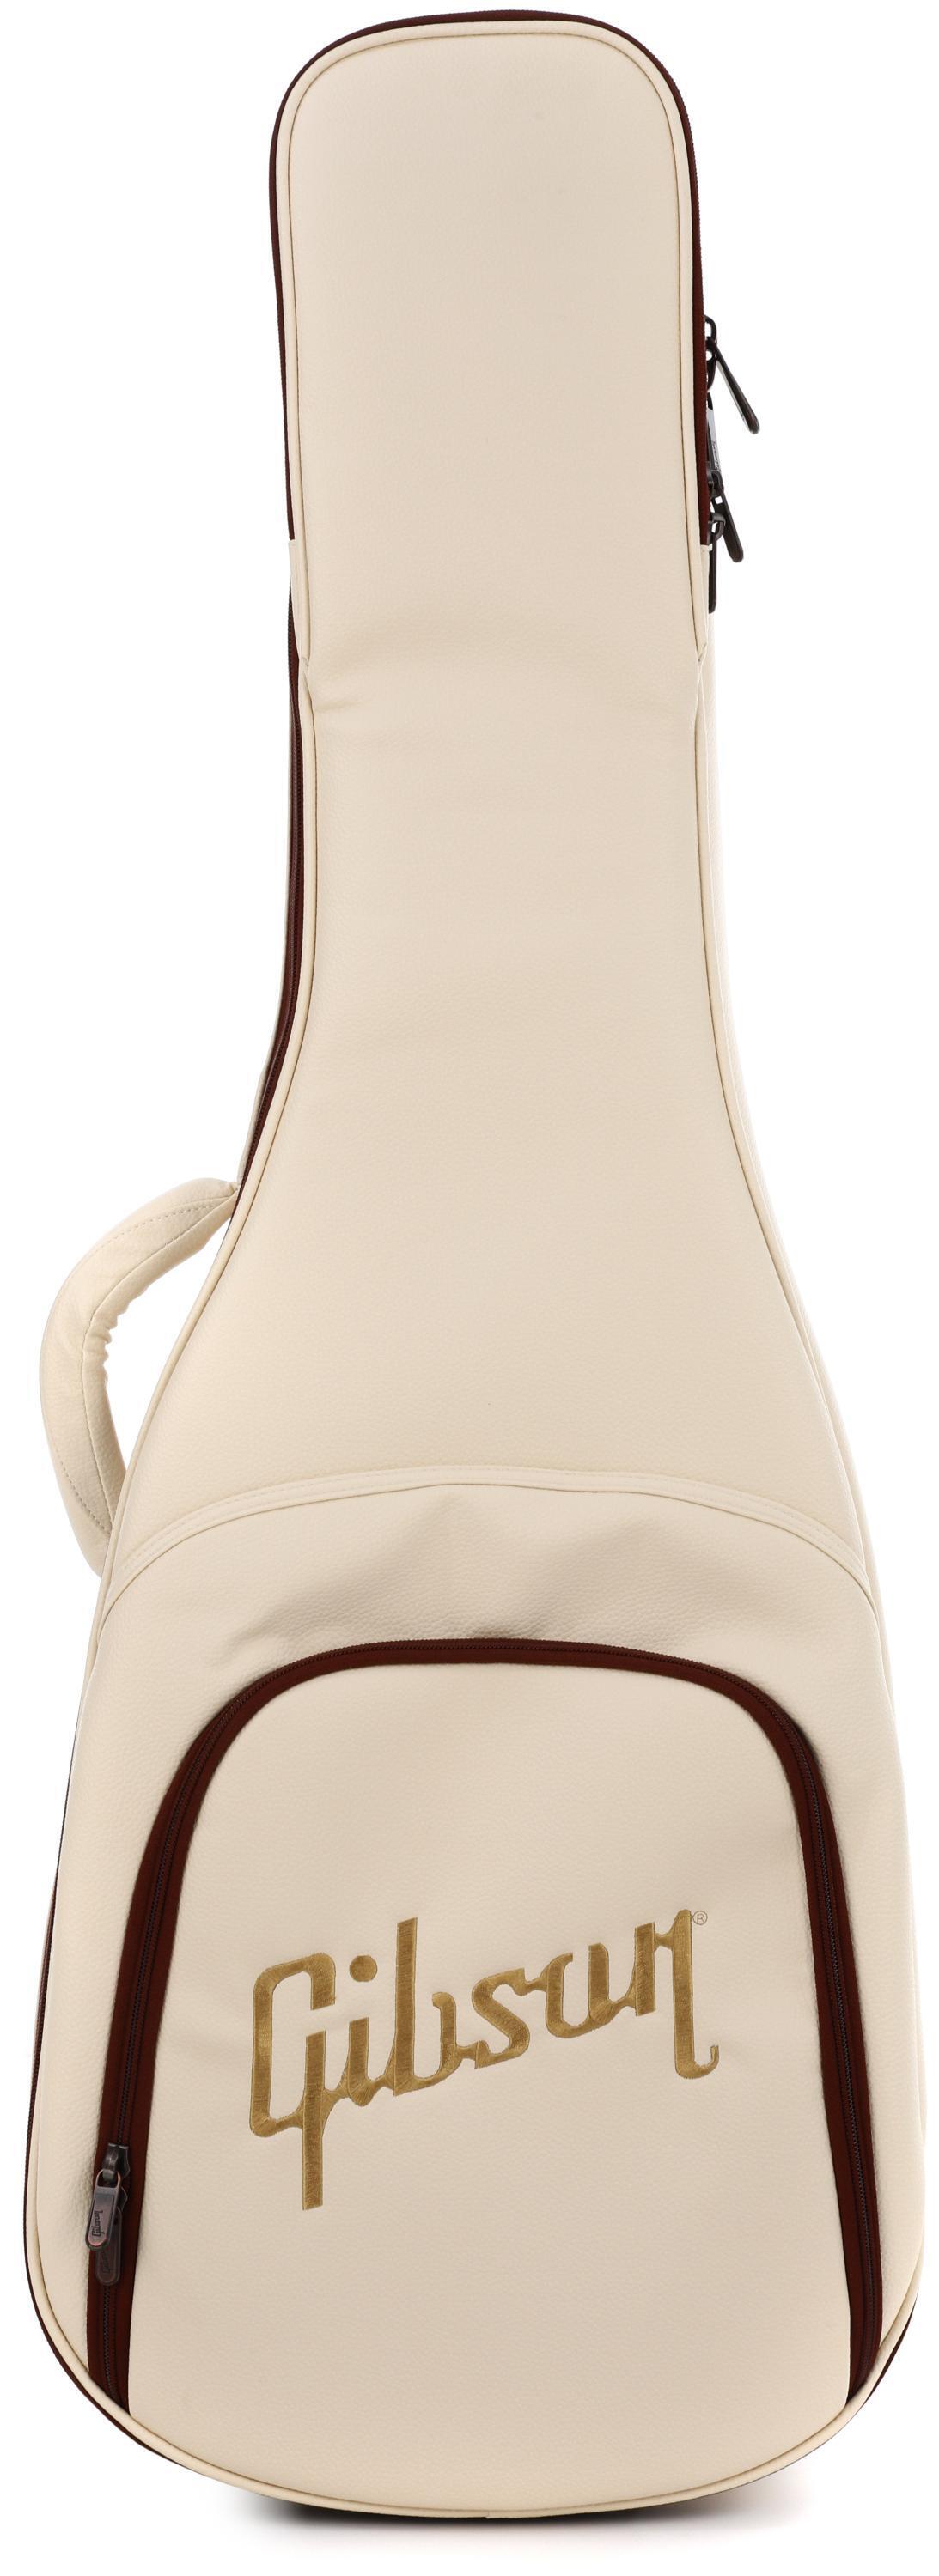 Gibson Accessories Premium Softcase - Cream